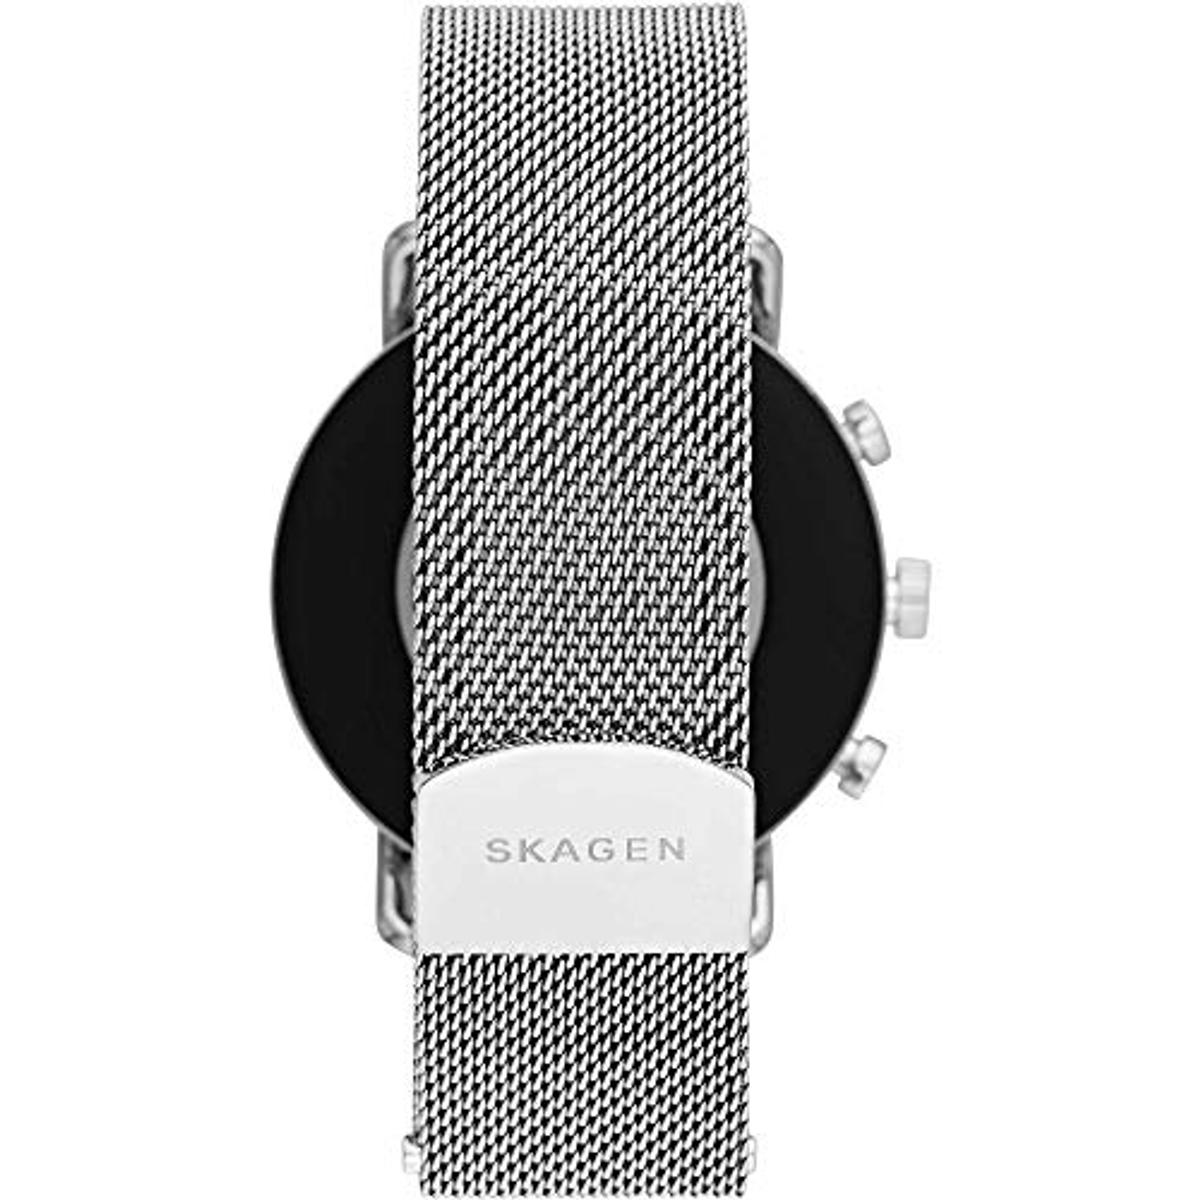 SKAGEN Smartwatch Skagen SKT5102 Smartwatch Edelstahl silicone, mm, Silver/Black 185